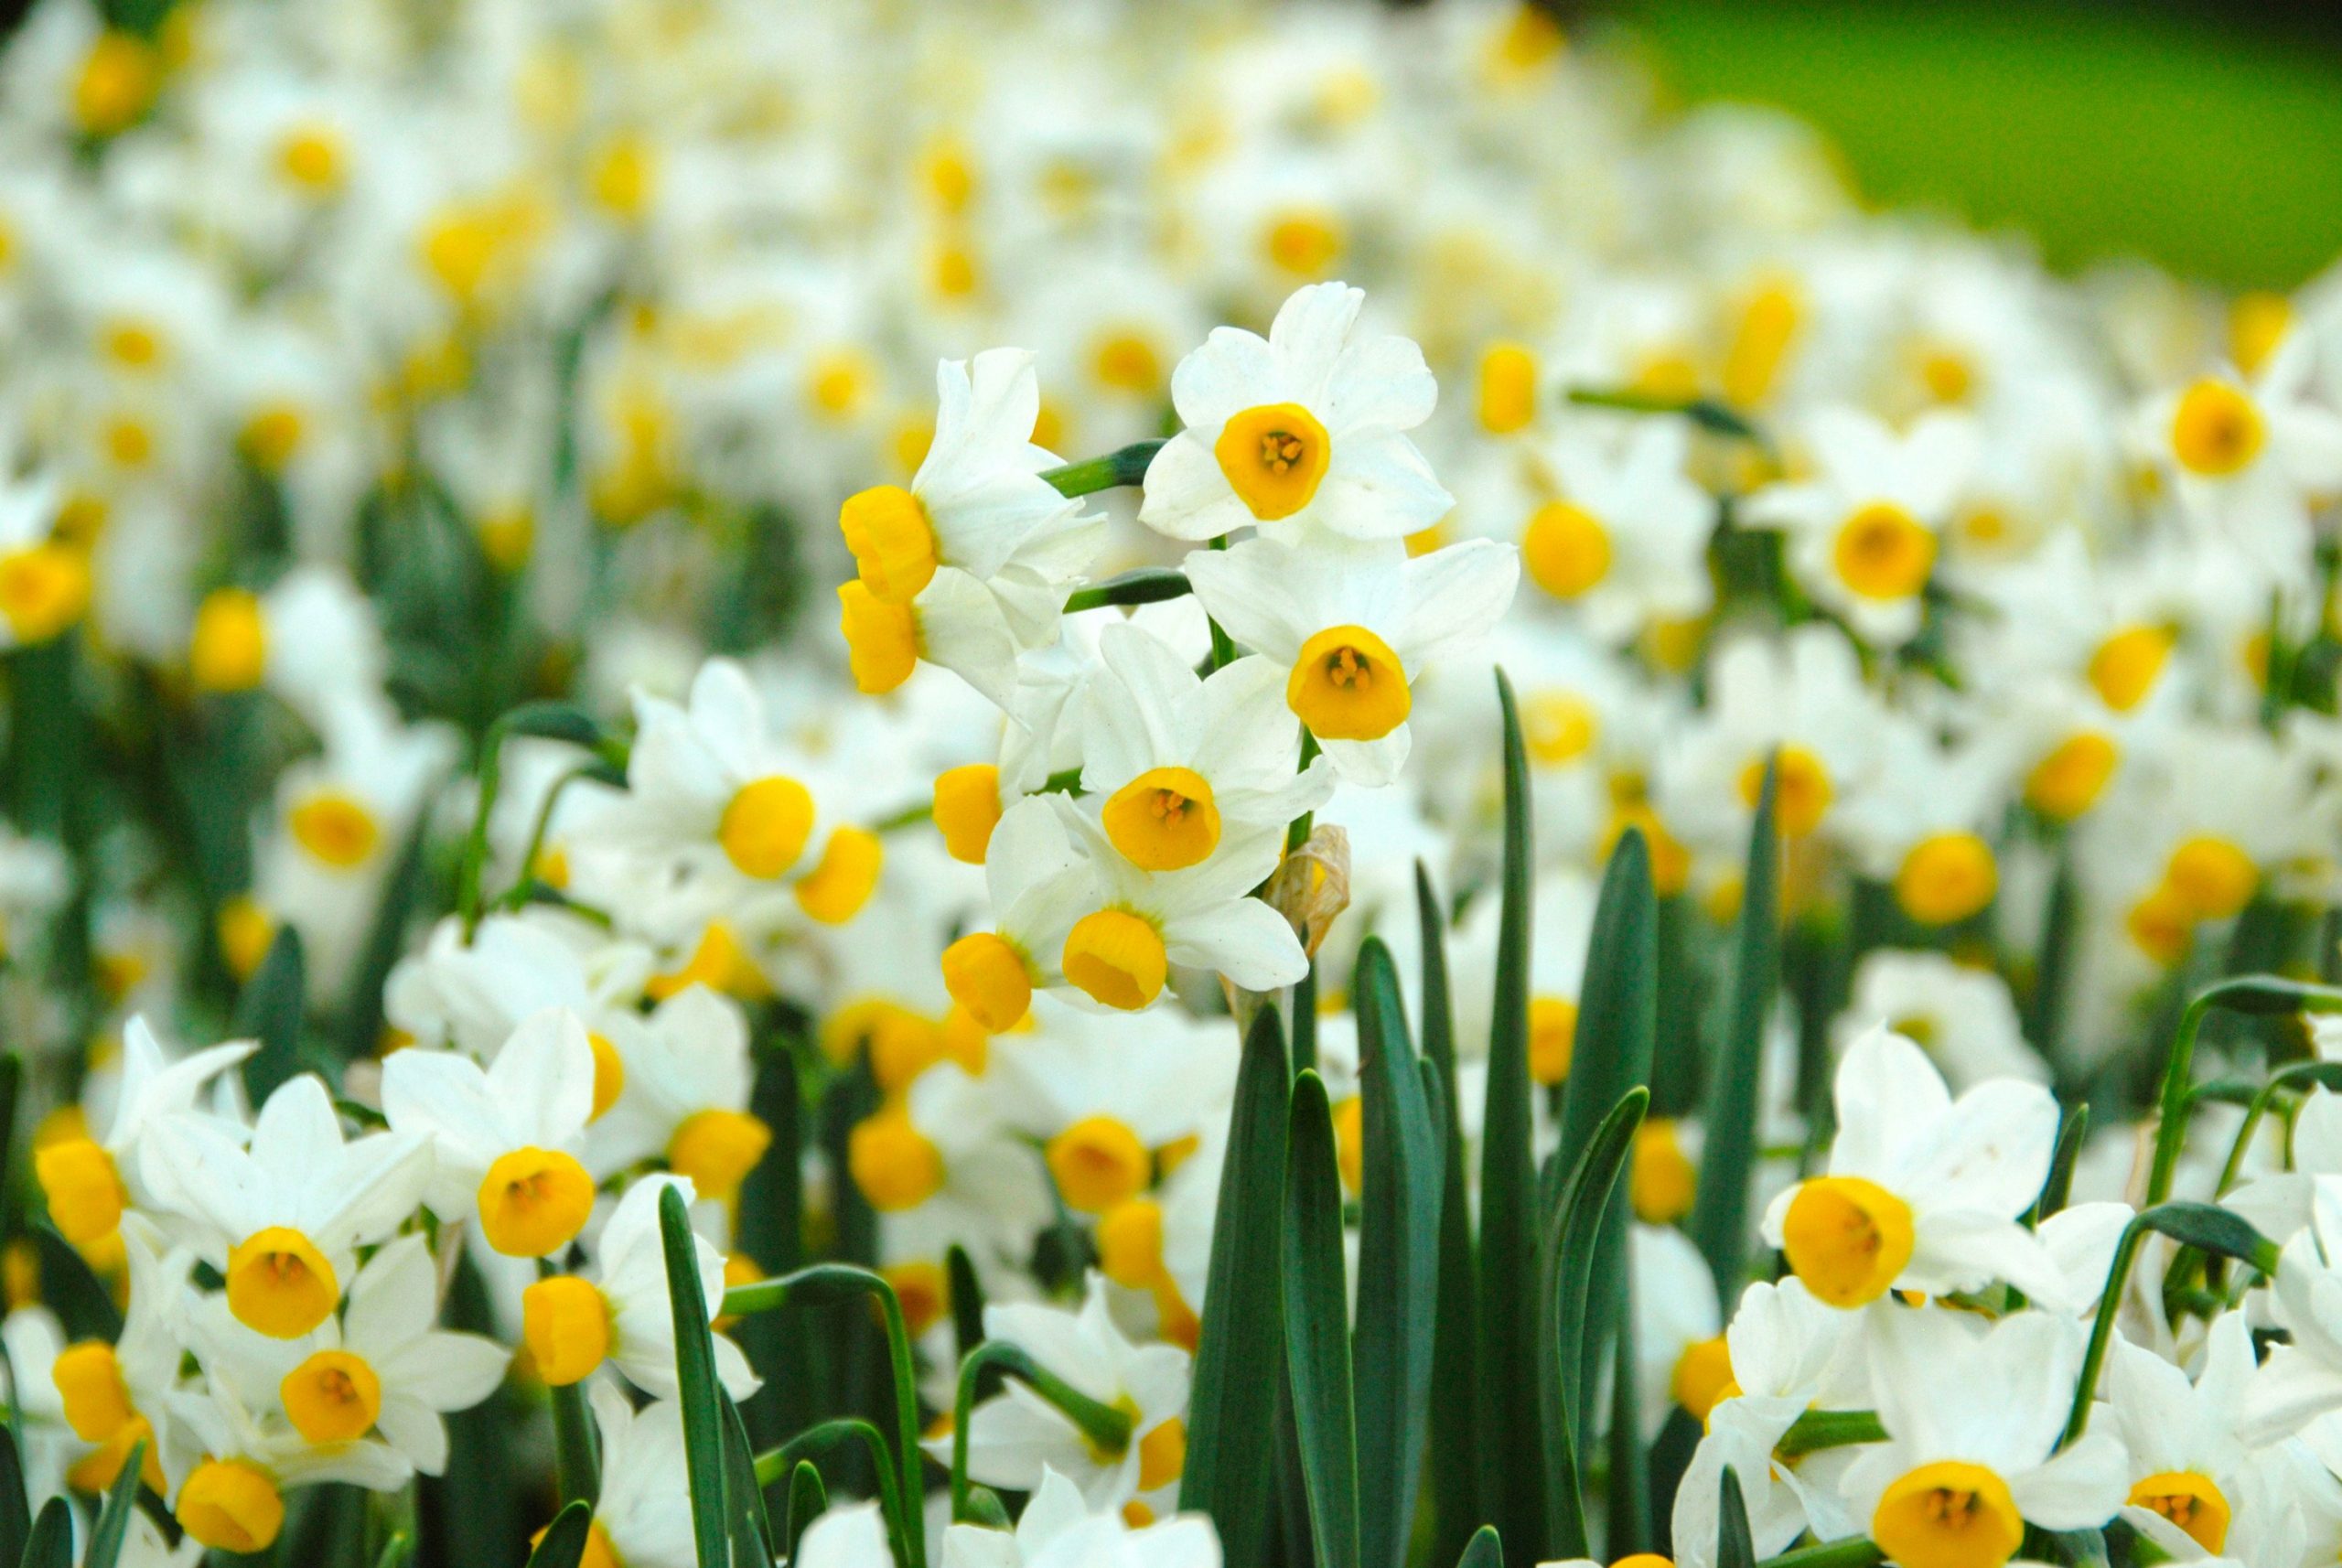 Hoa thủy tiên là bông hoa dài màu vàng óng tuyệt đẹp thường nở rộ vào mùa xuân.